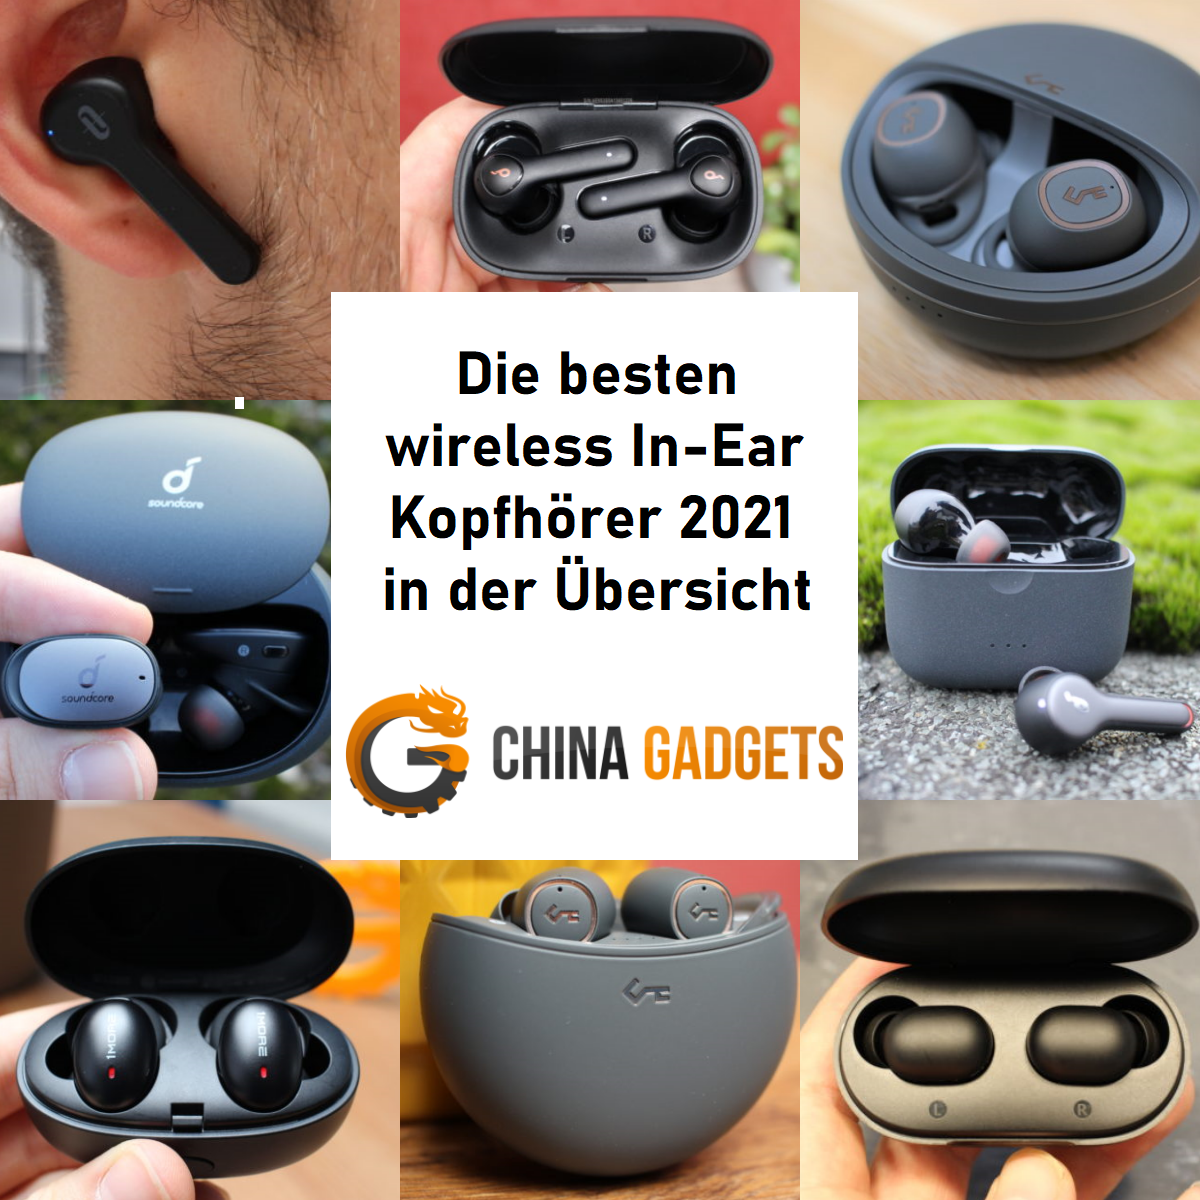 Die besten wireless In-Ear Kopfhörer 2021 🏆